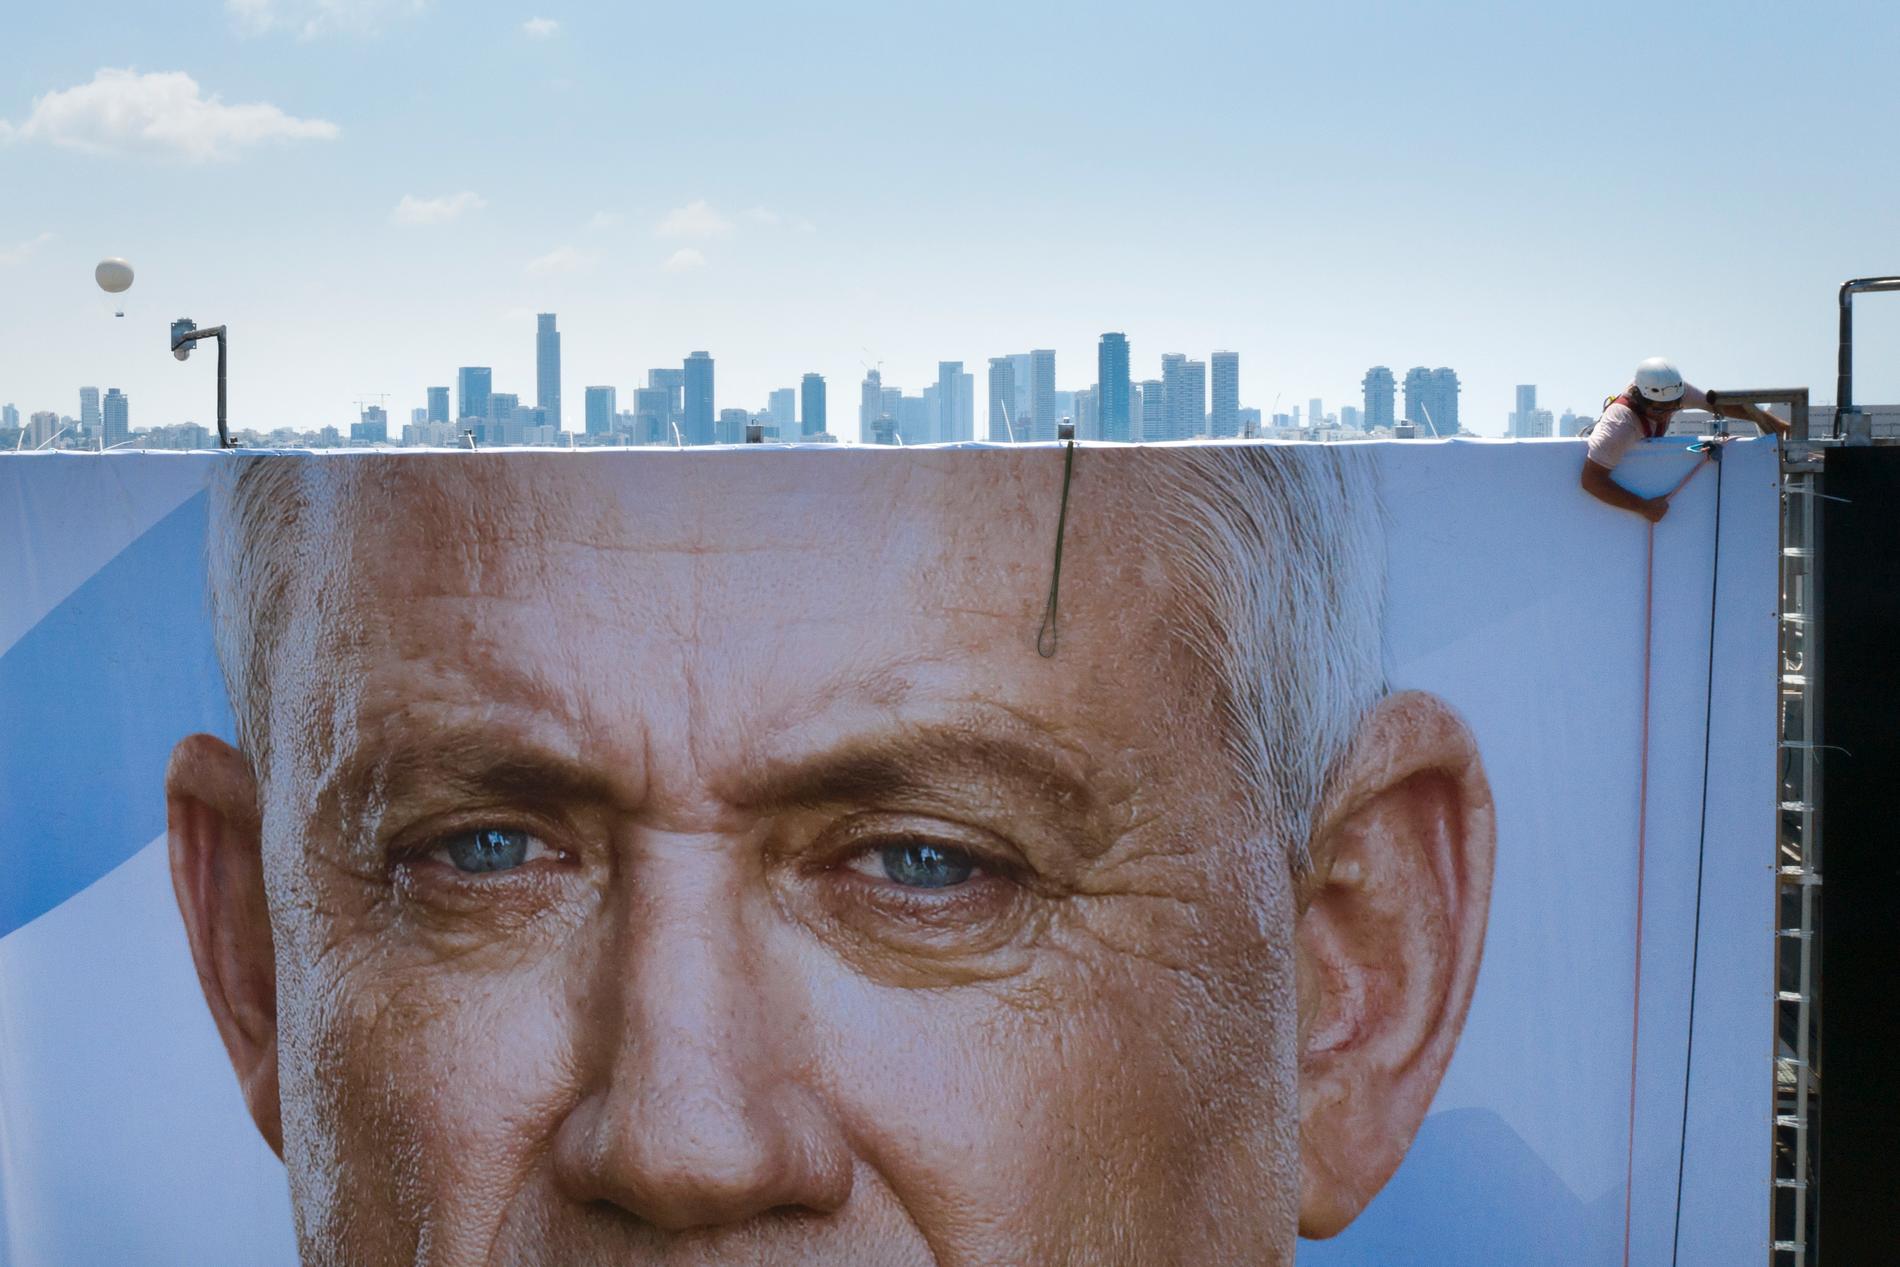 Centerpartialliansen Blått och vitts ledare, den forne militärchefen Benny Gantz, fyller en stor annonsskärm i Tel Aviv, Israel. Han kan bli landets nye premiärminister.